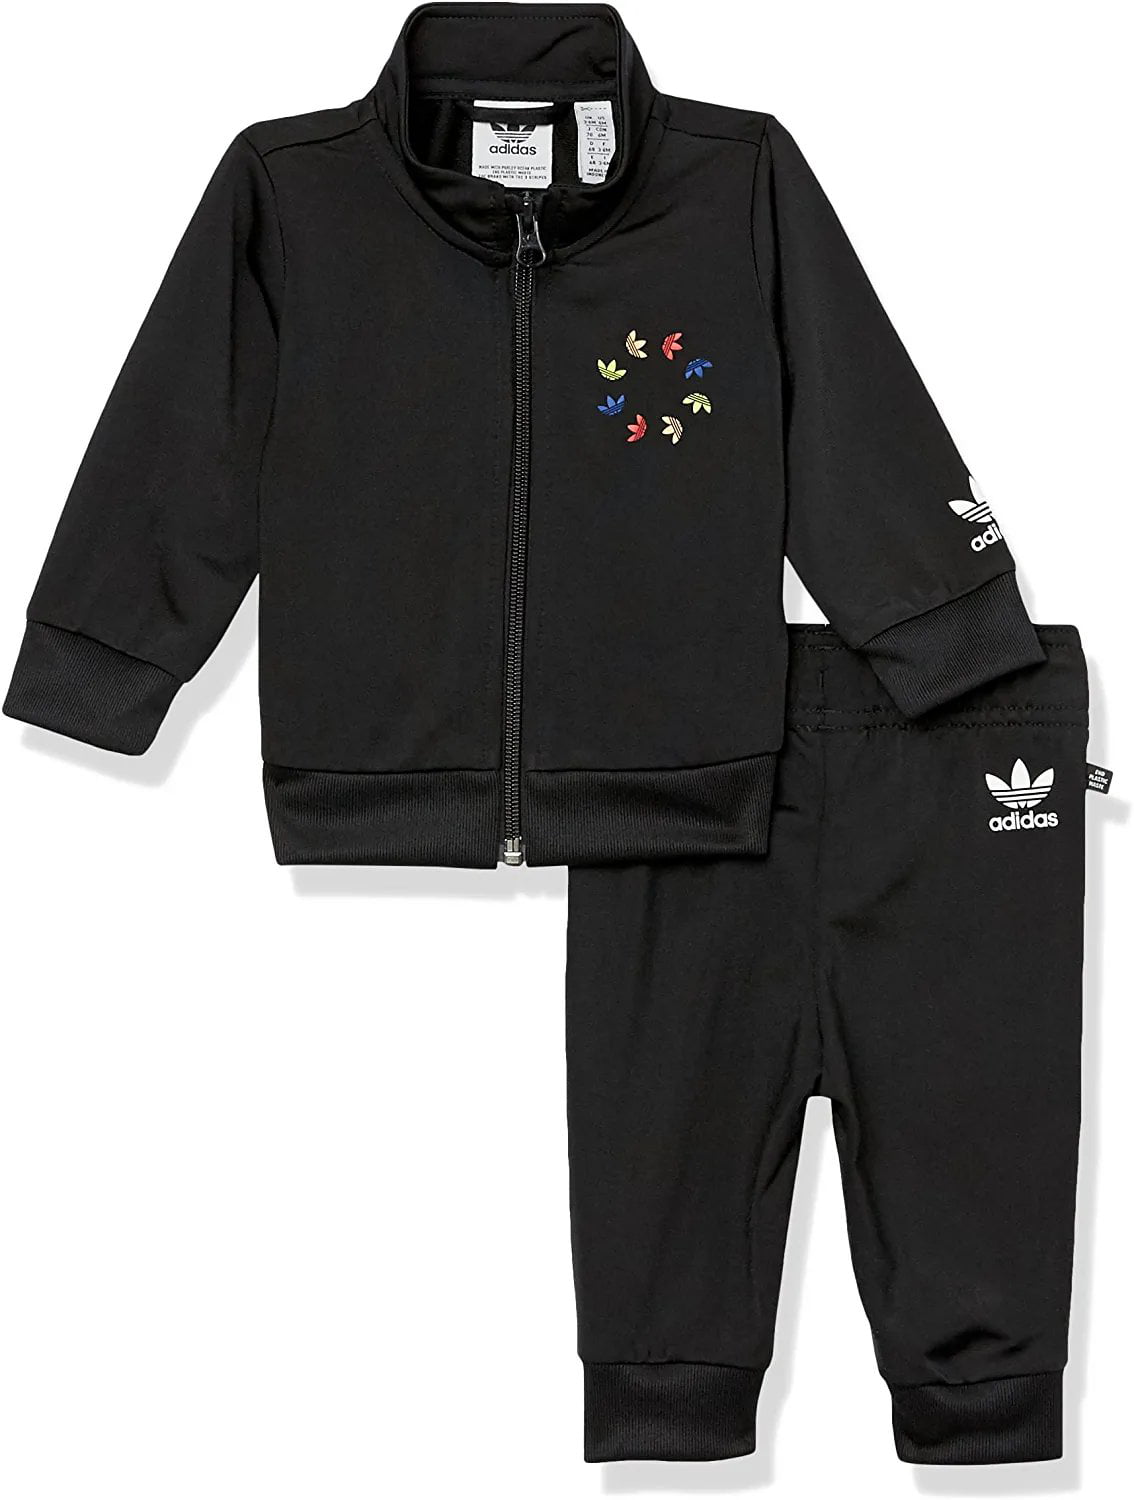 Adidas Originals Unisex-Baby Adicolor Track Suit, Black, 6 Months -